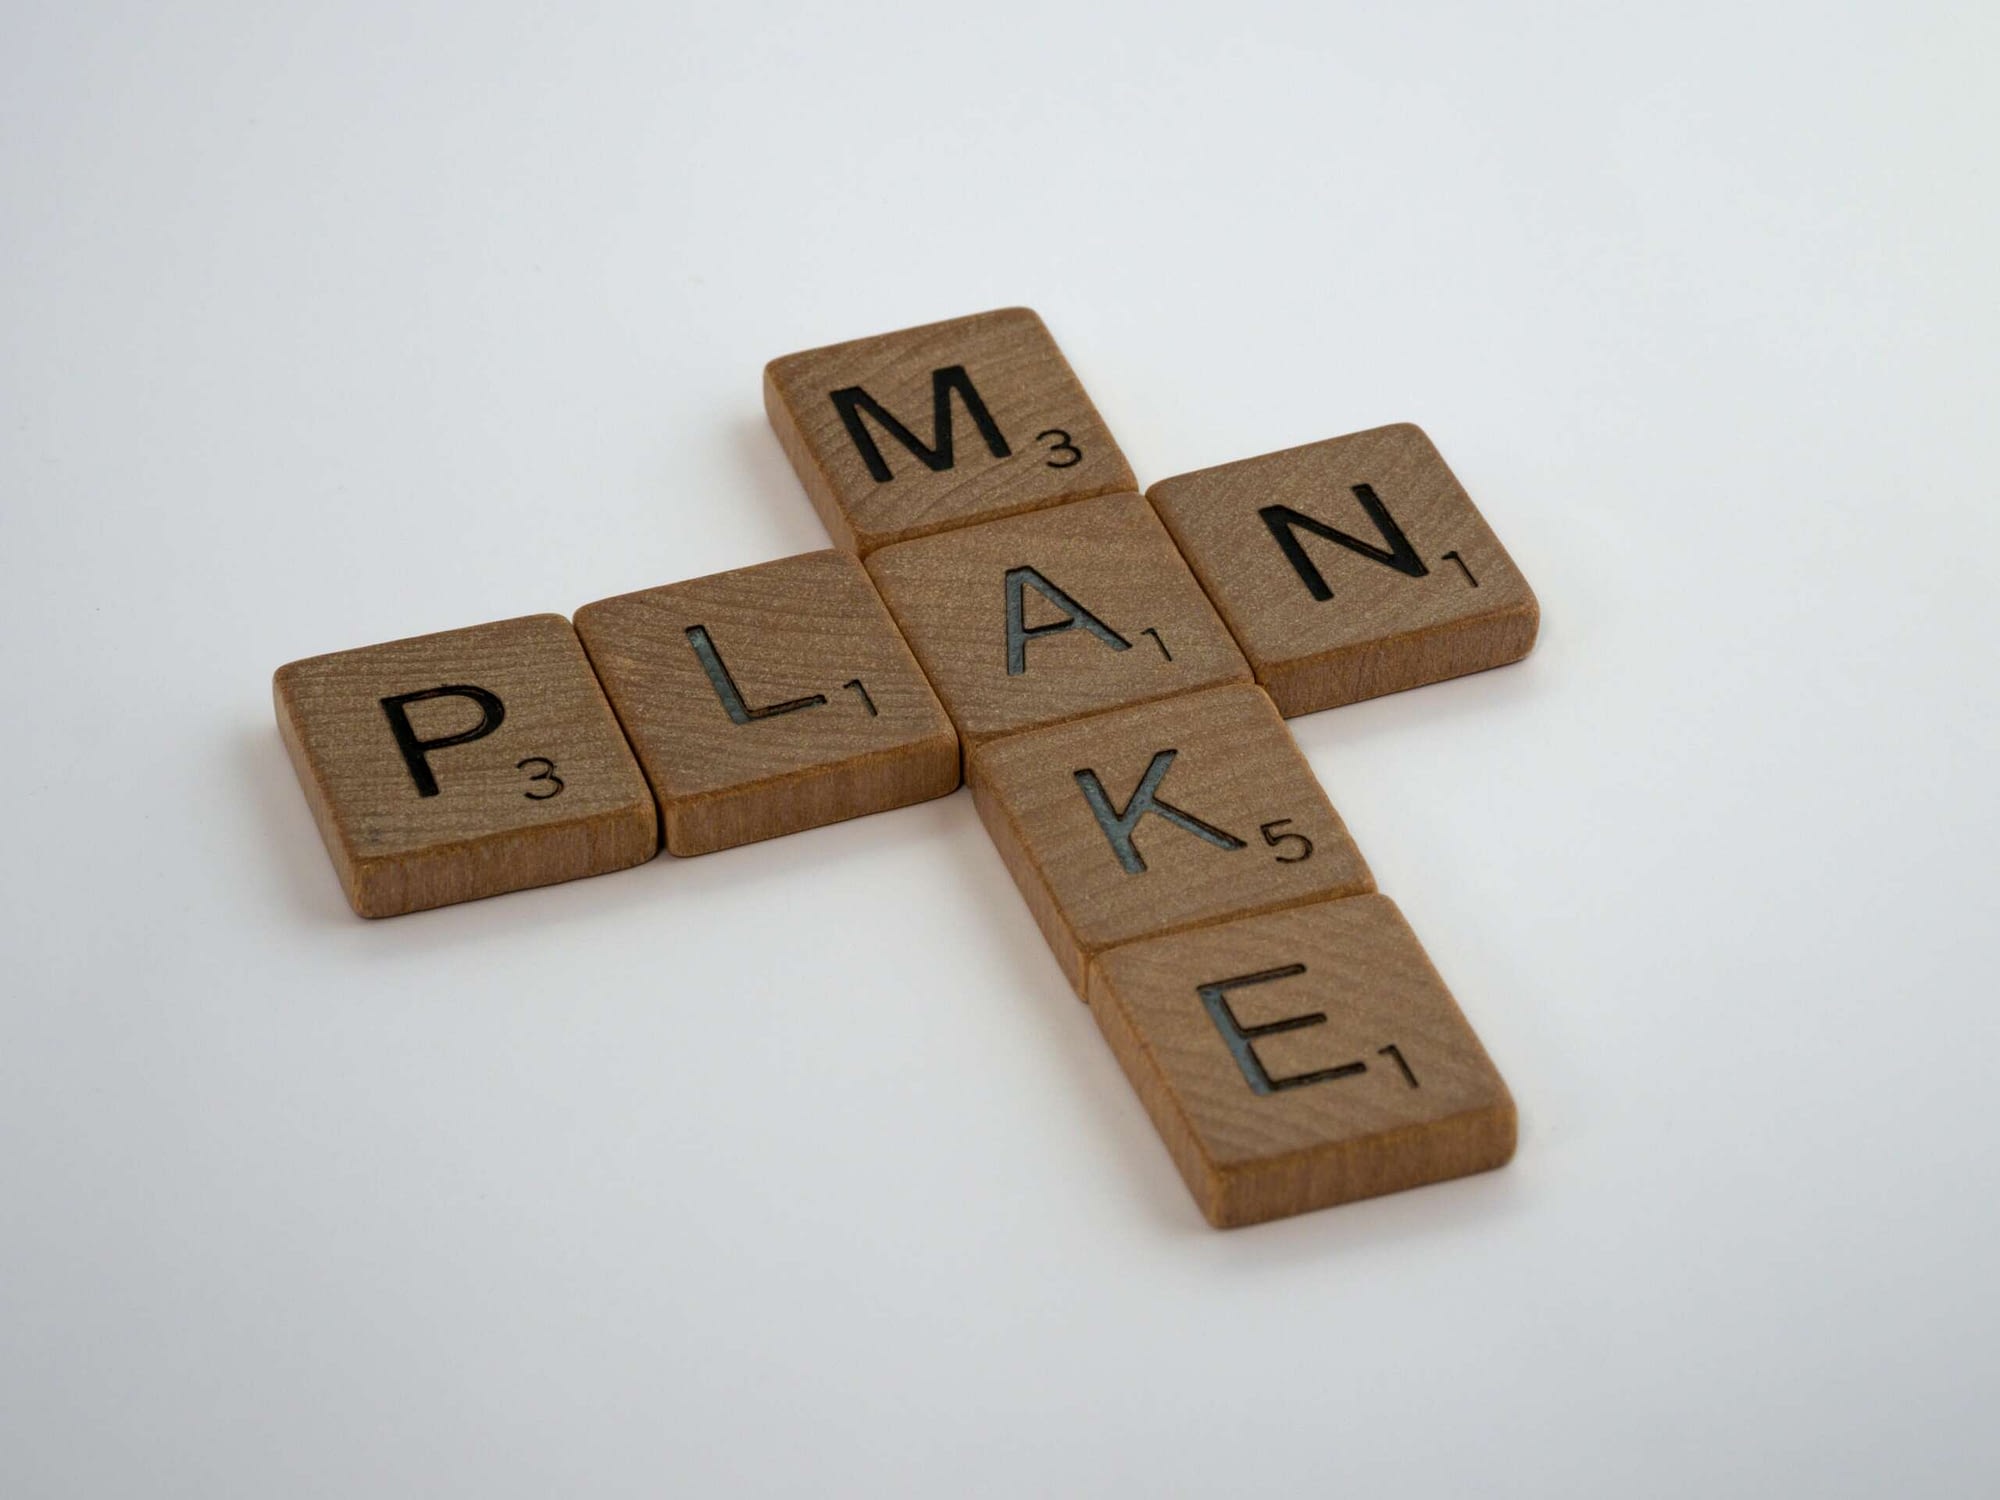 Plättchen mit Buchstaben auf denen "MAKE PLAN" steht